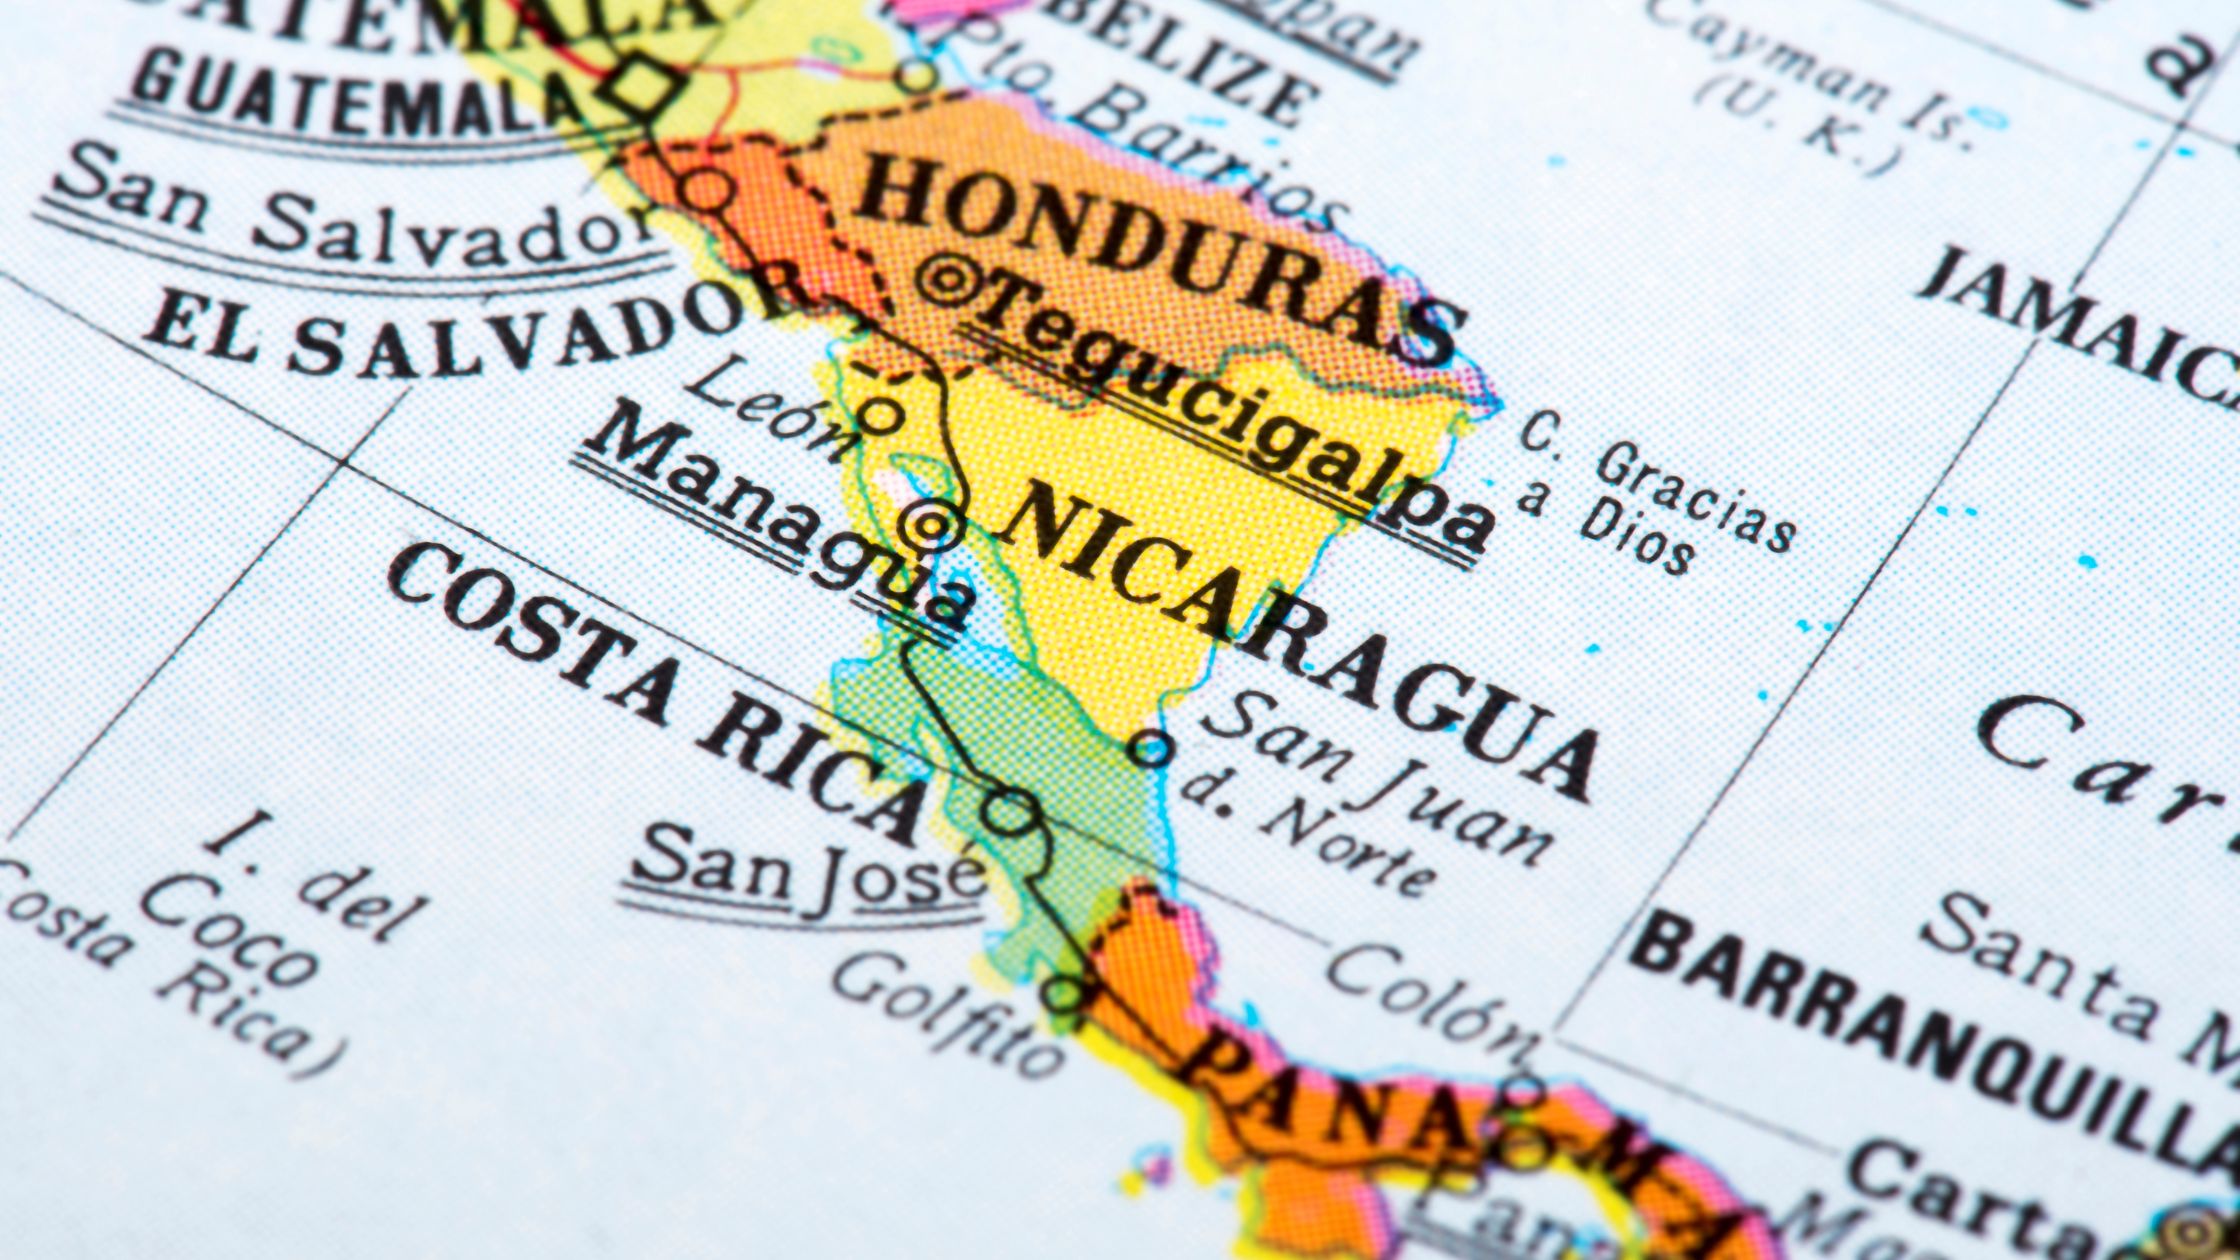 Mapa da América Central